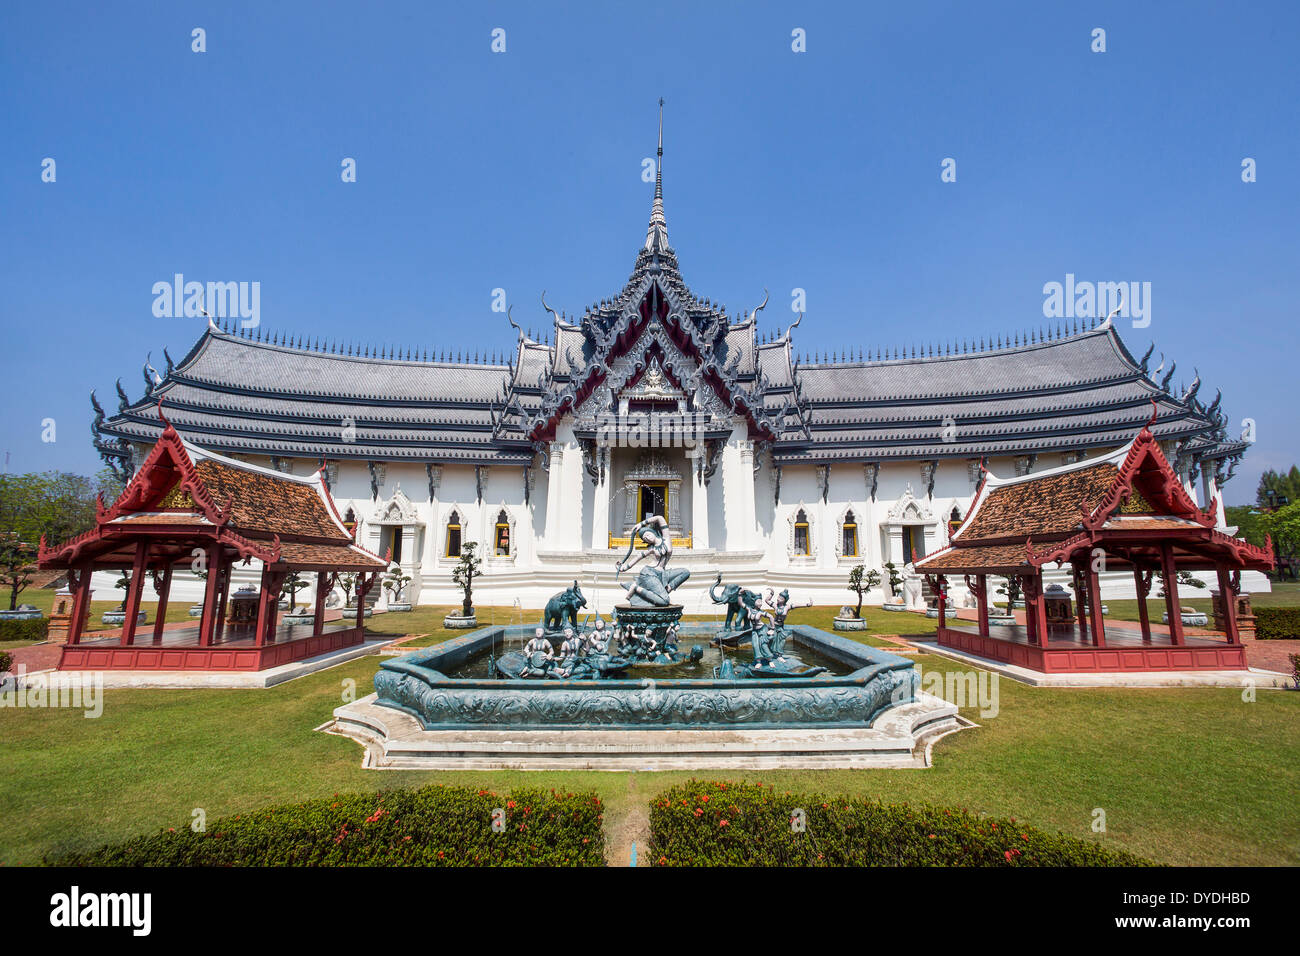 Asie Thaïlande Bangkok l'ancienne Siam Park Ayutthaya Sanphet Prasat palace park culture colorée architecture voyage touristique Banque D'Images